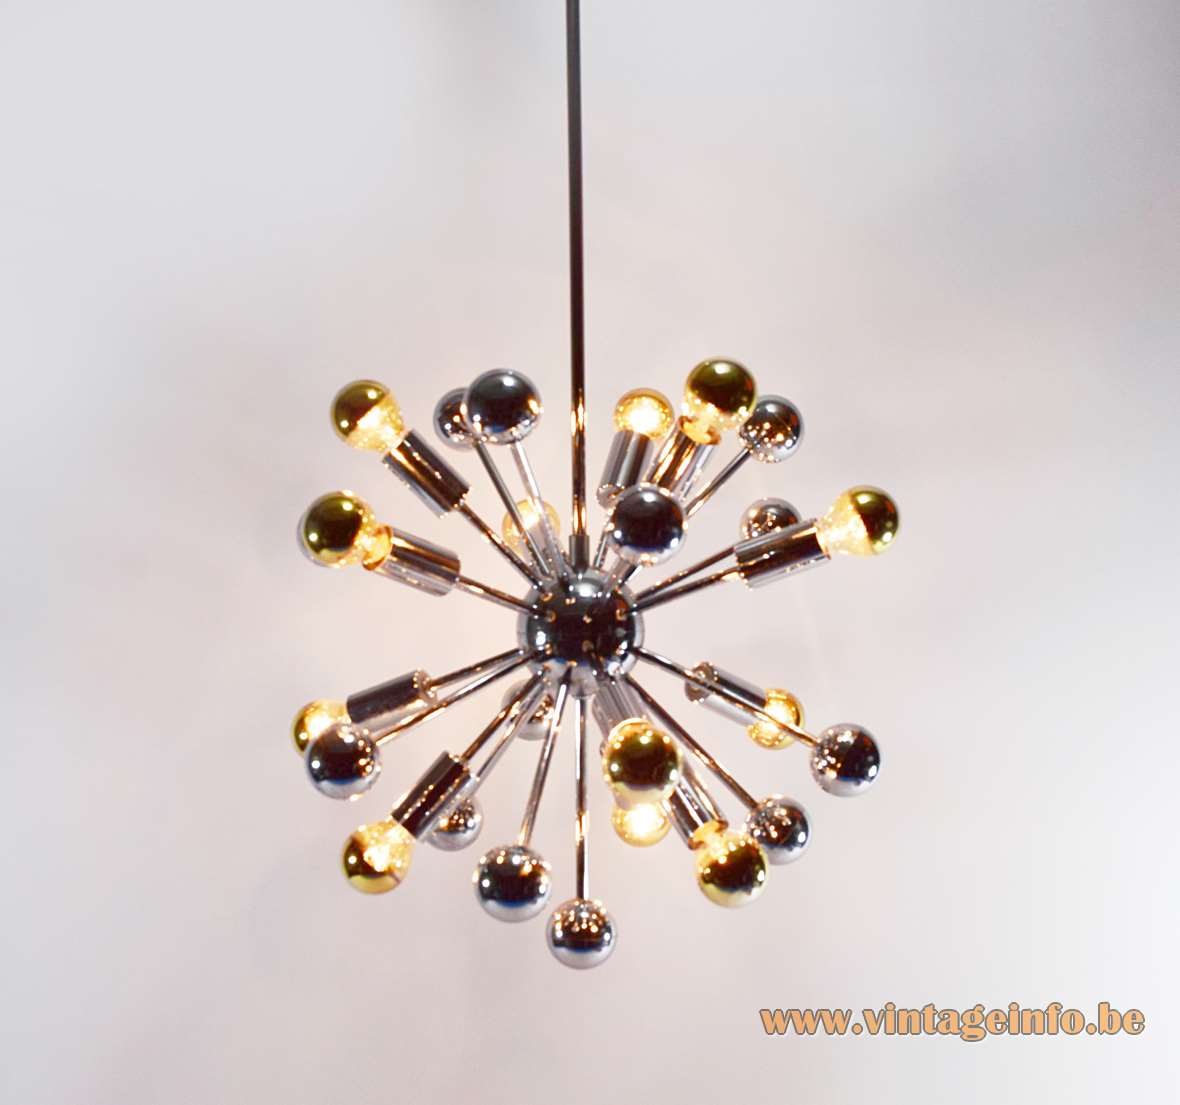 1960s chrome Sputnik chandelier long rods globe & balls 12 silver tipped bulbs Boulanger Belgium 1970s